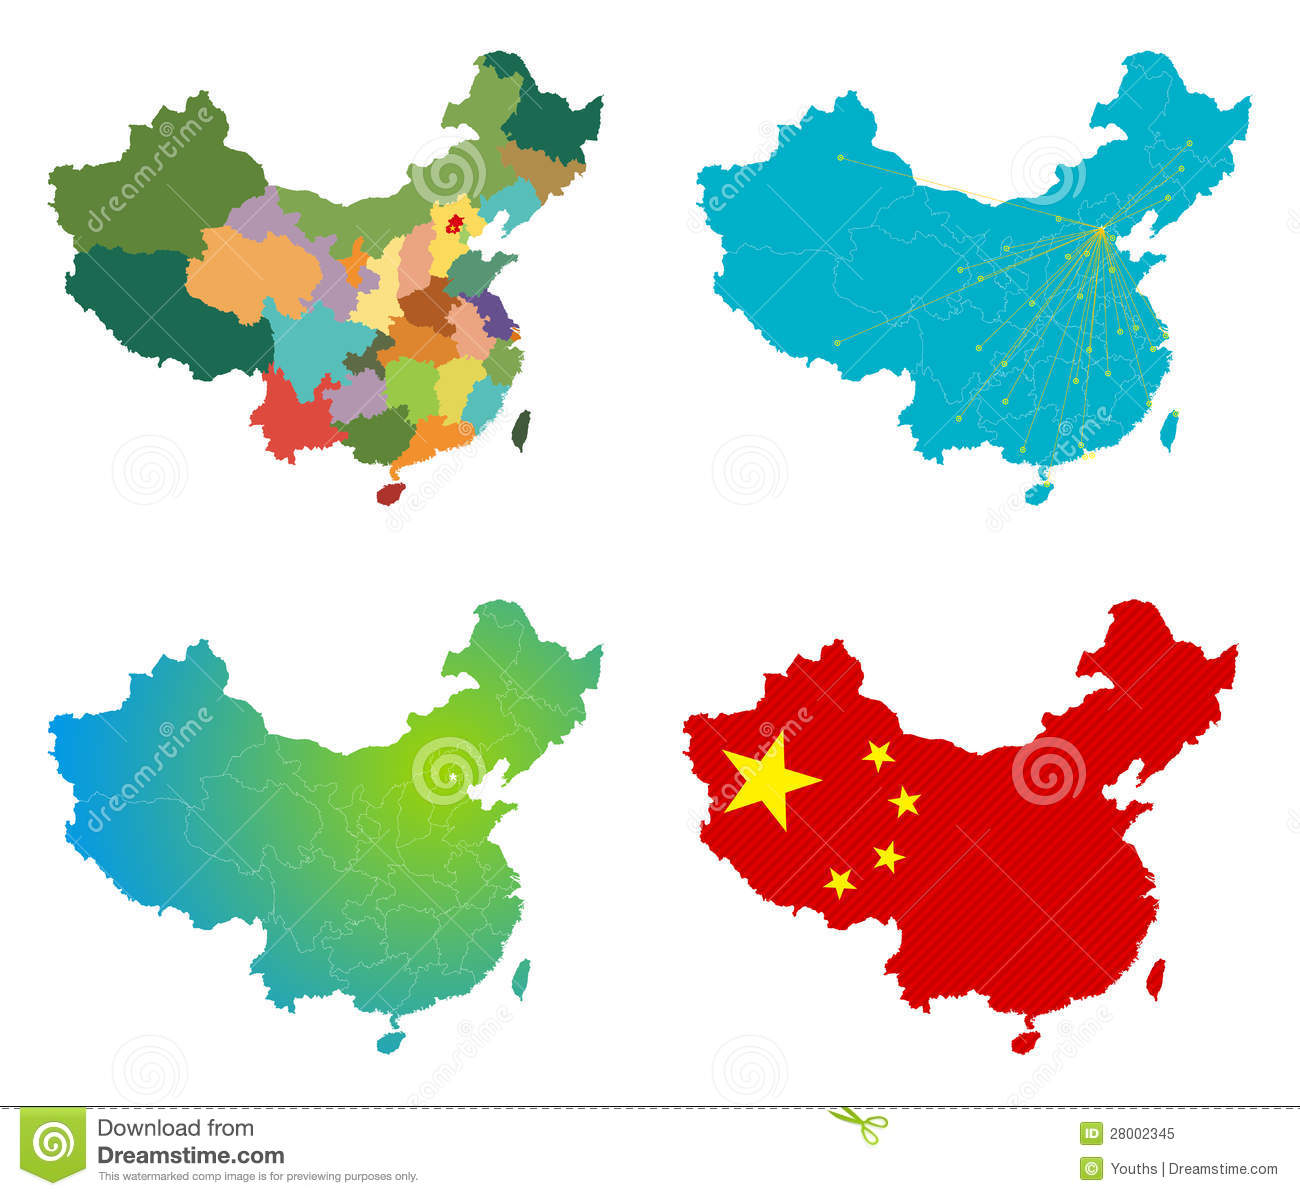 China Map Vector